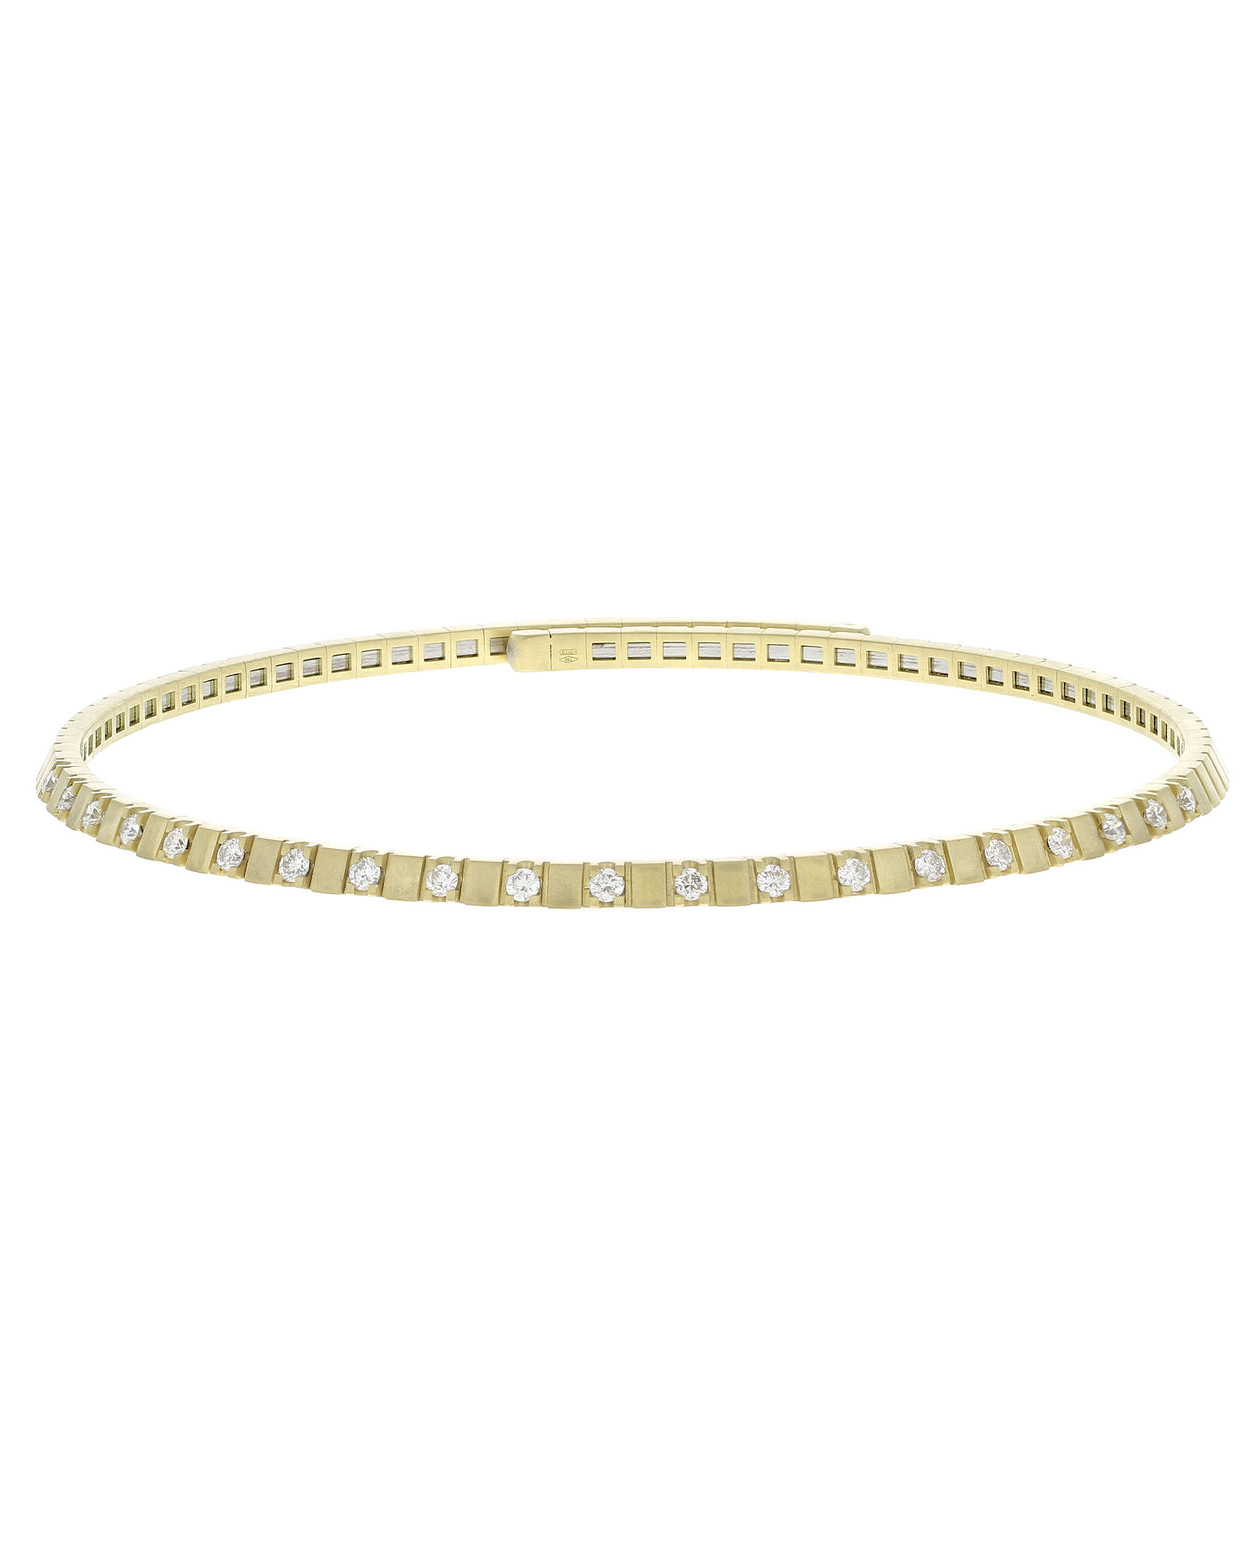 zodiac jewelry natural diamond jewelry style virgo